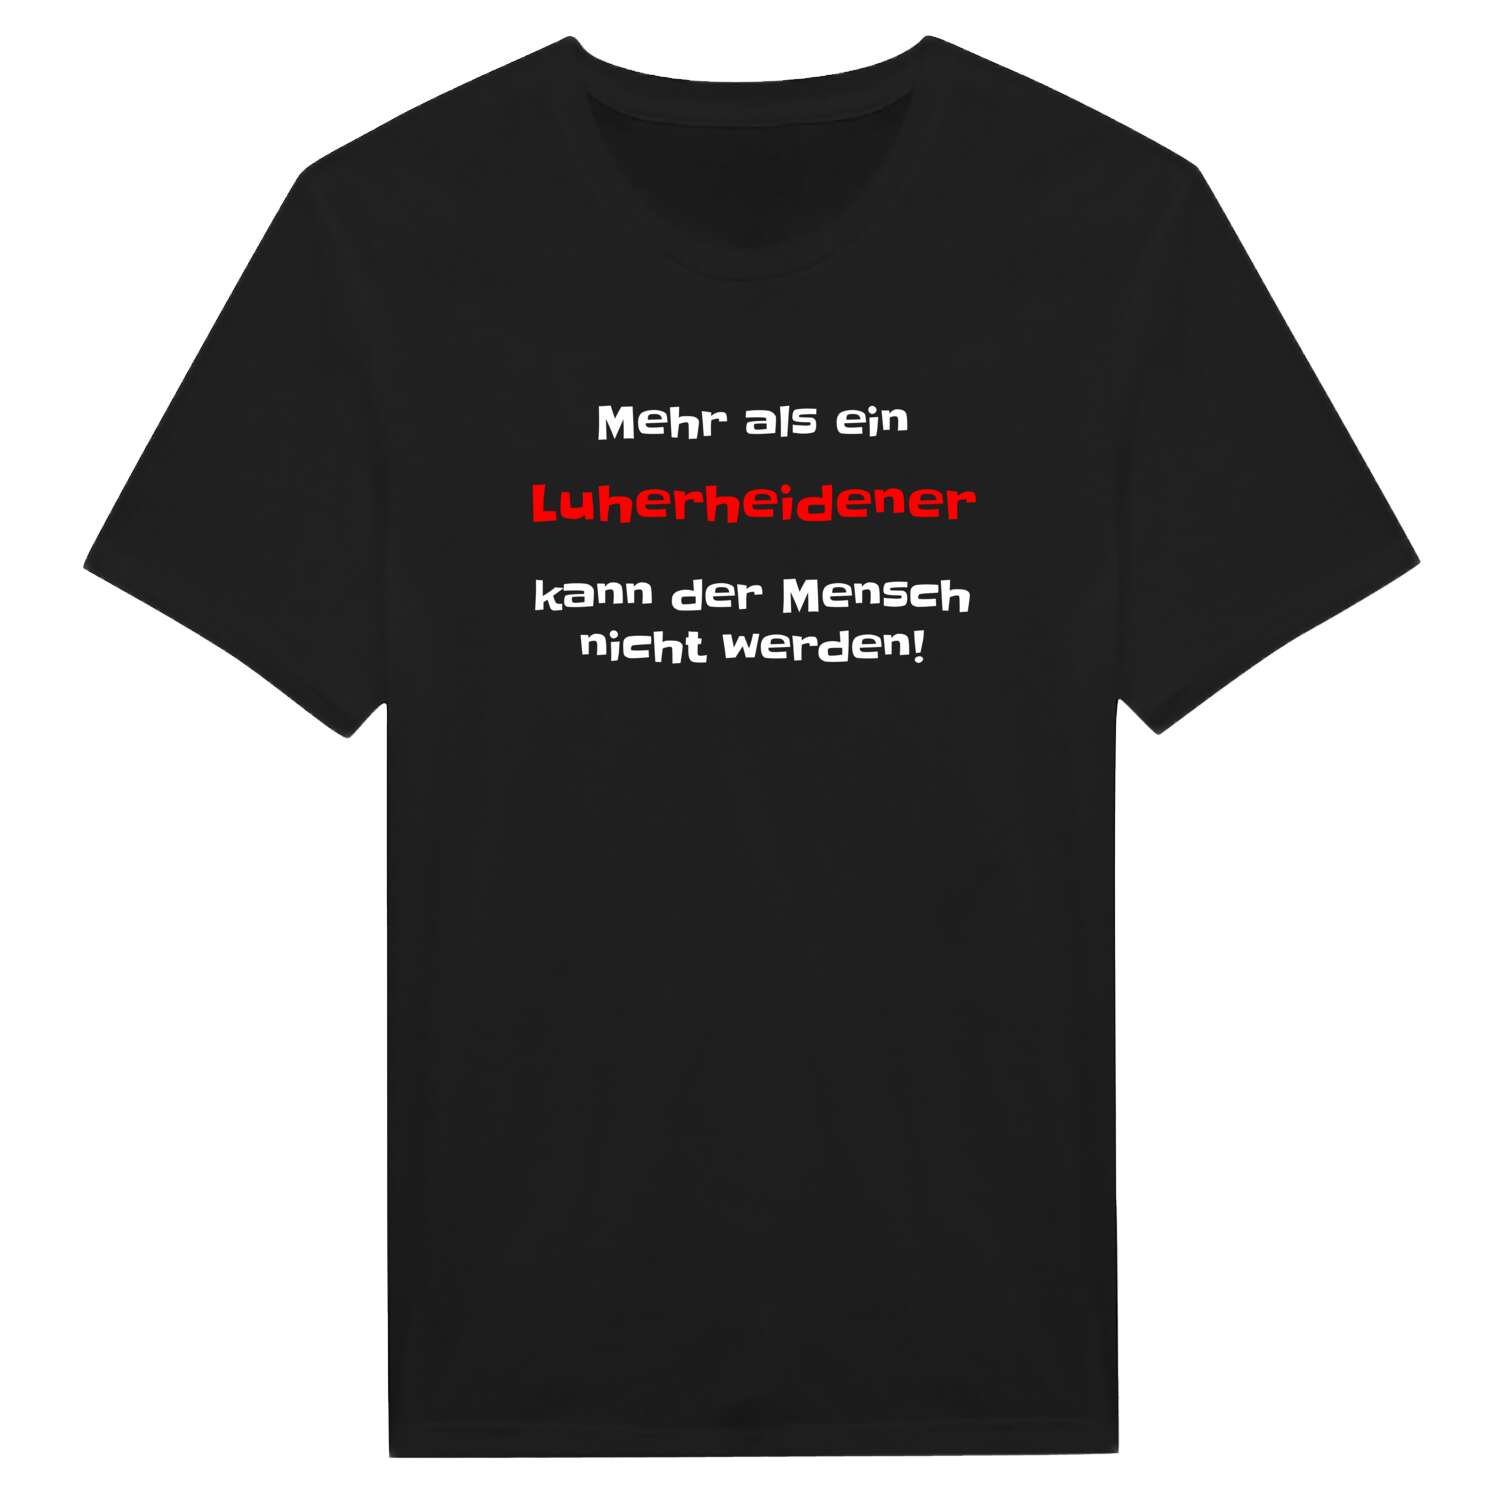 Luherheide T-Shirt »Mehr als ein«